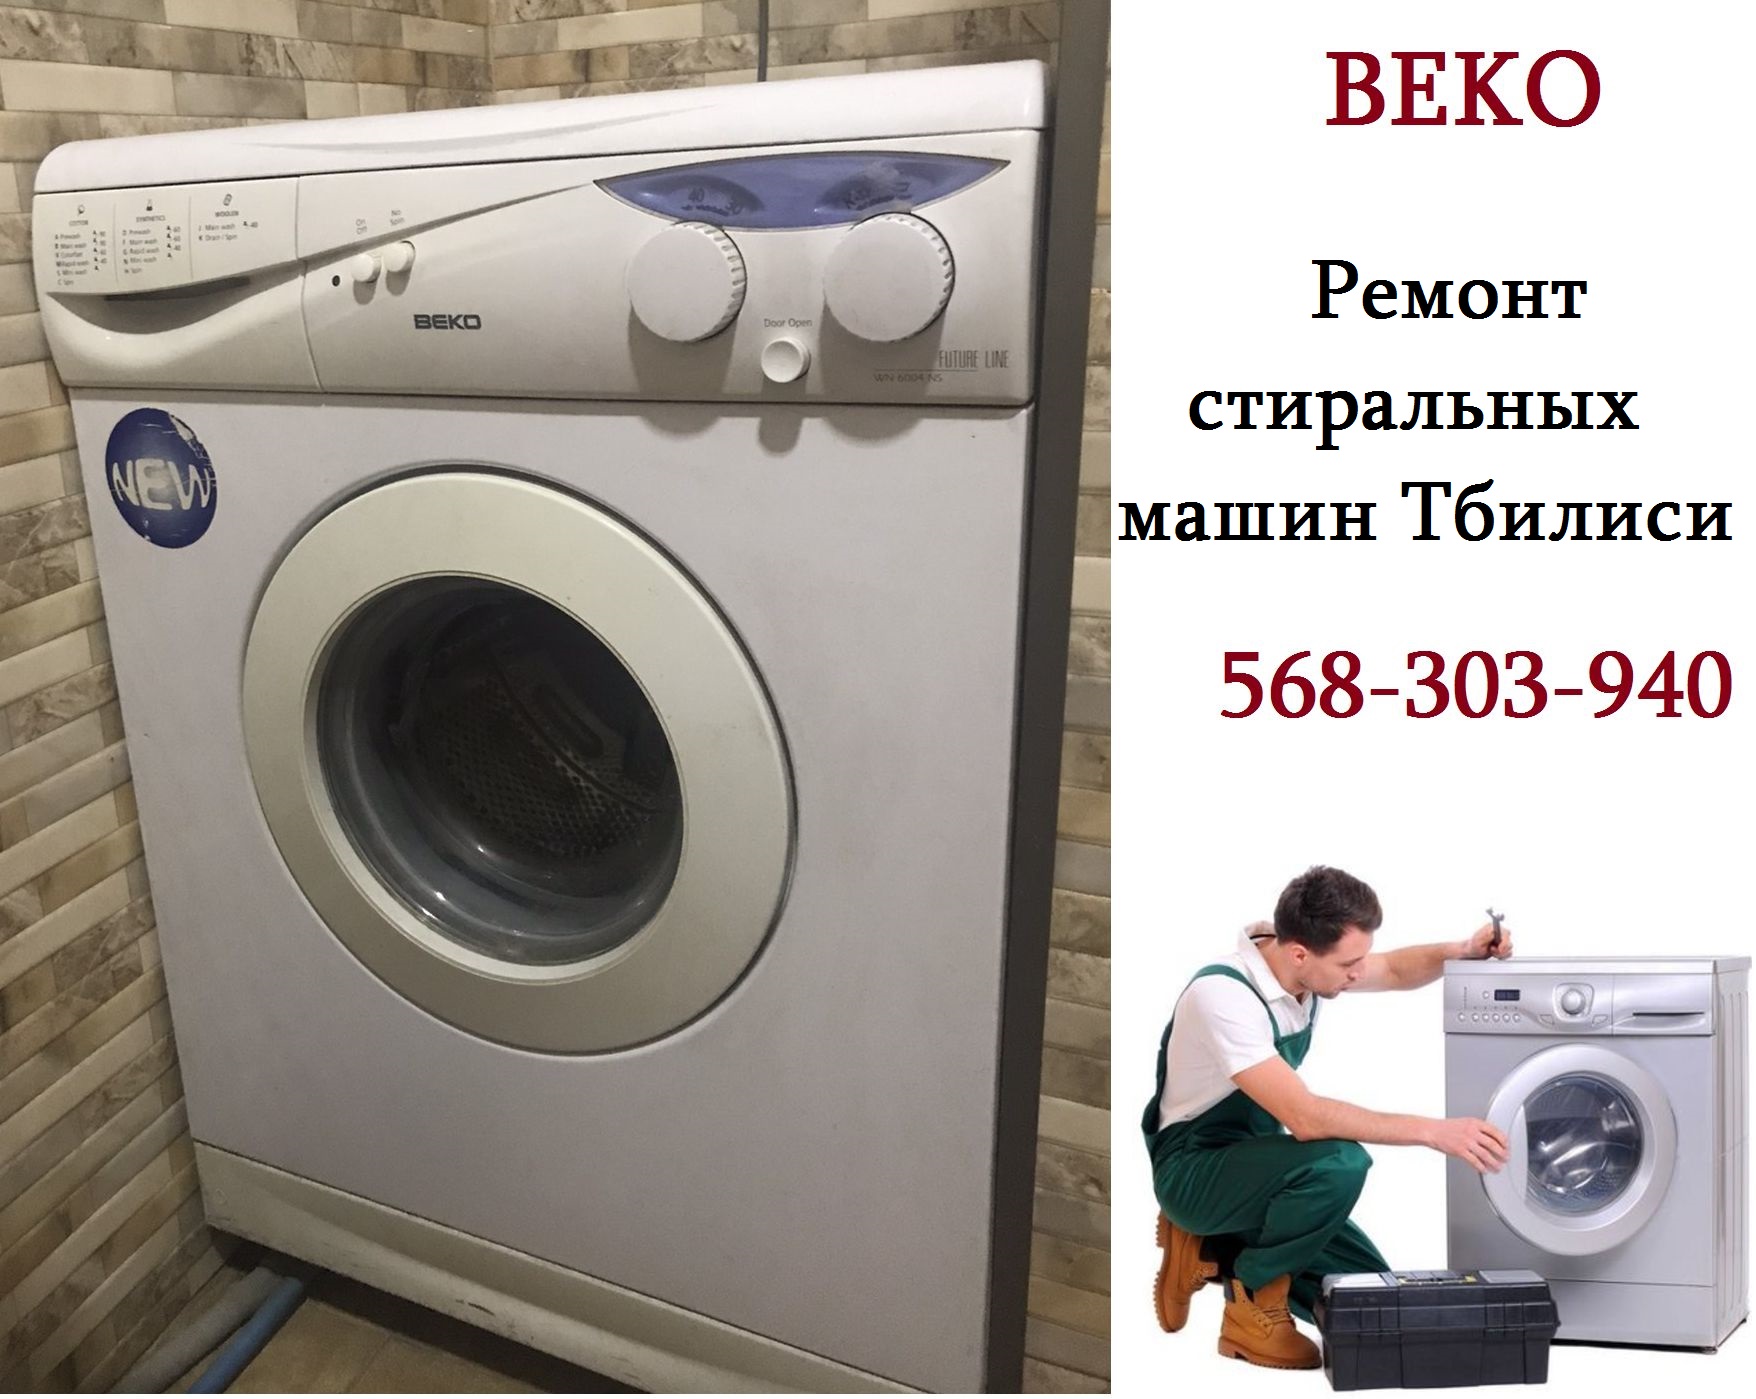  ремонт стиральных машин Беко Beko Тбилиси